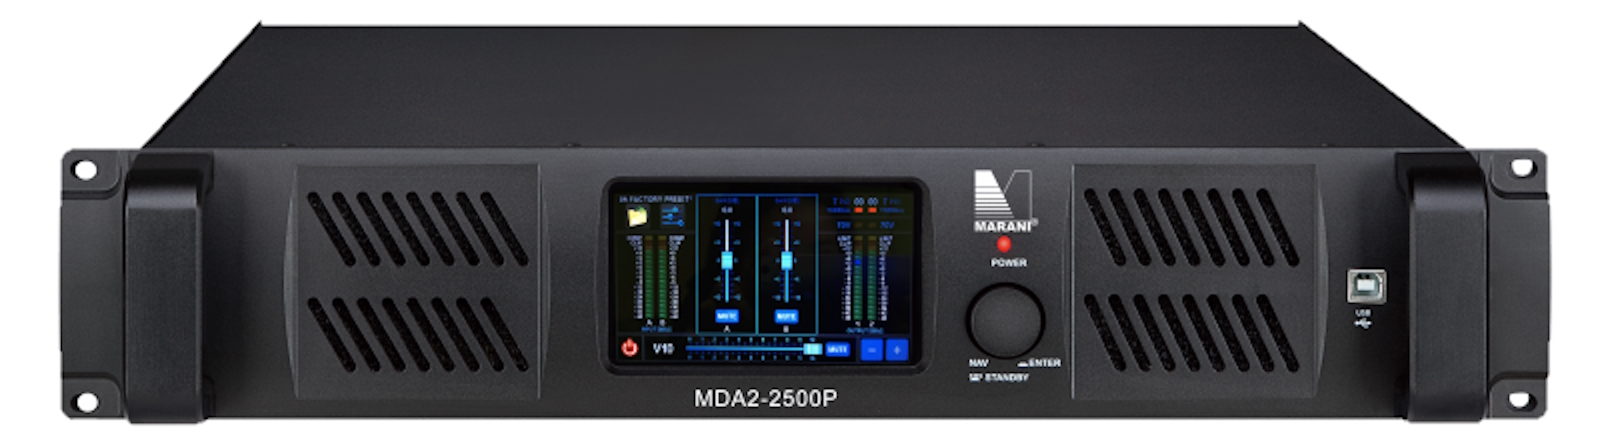 Усилители двухканальные Marani MDA2-2500P DANTE